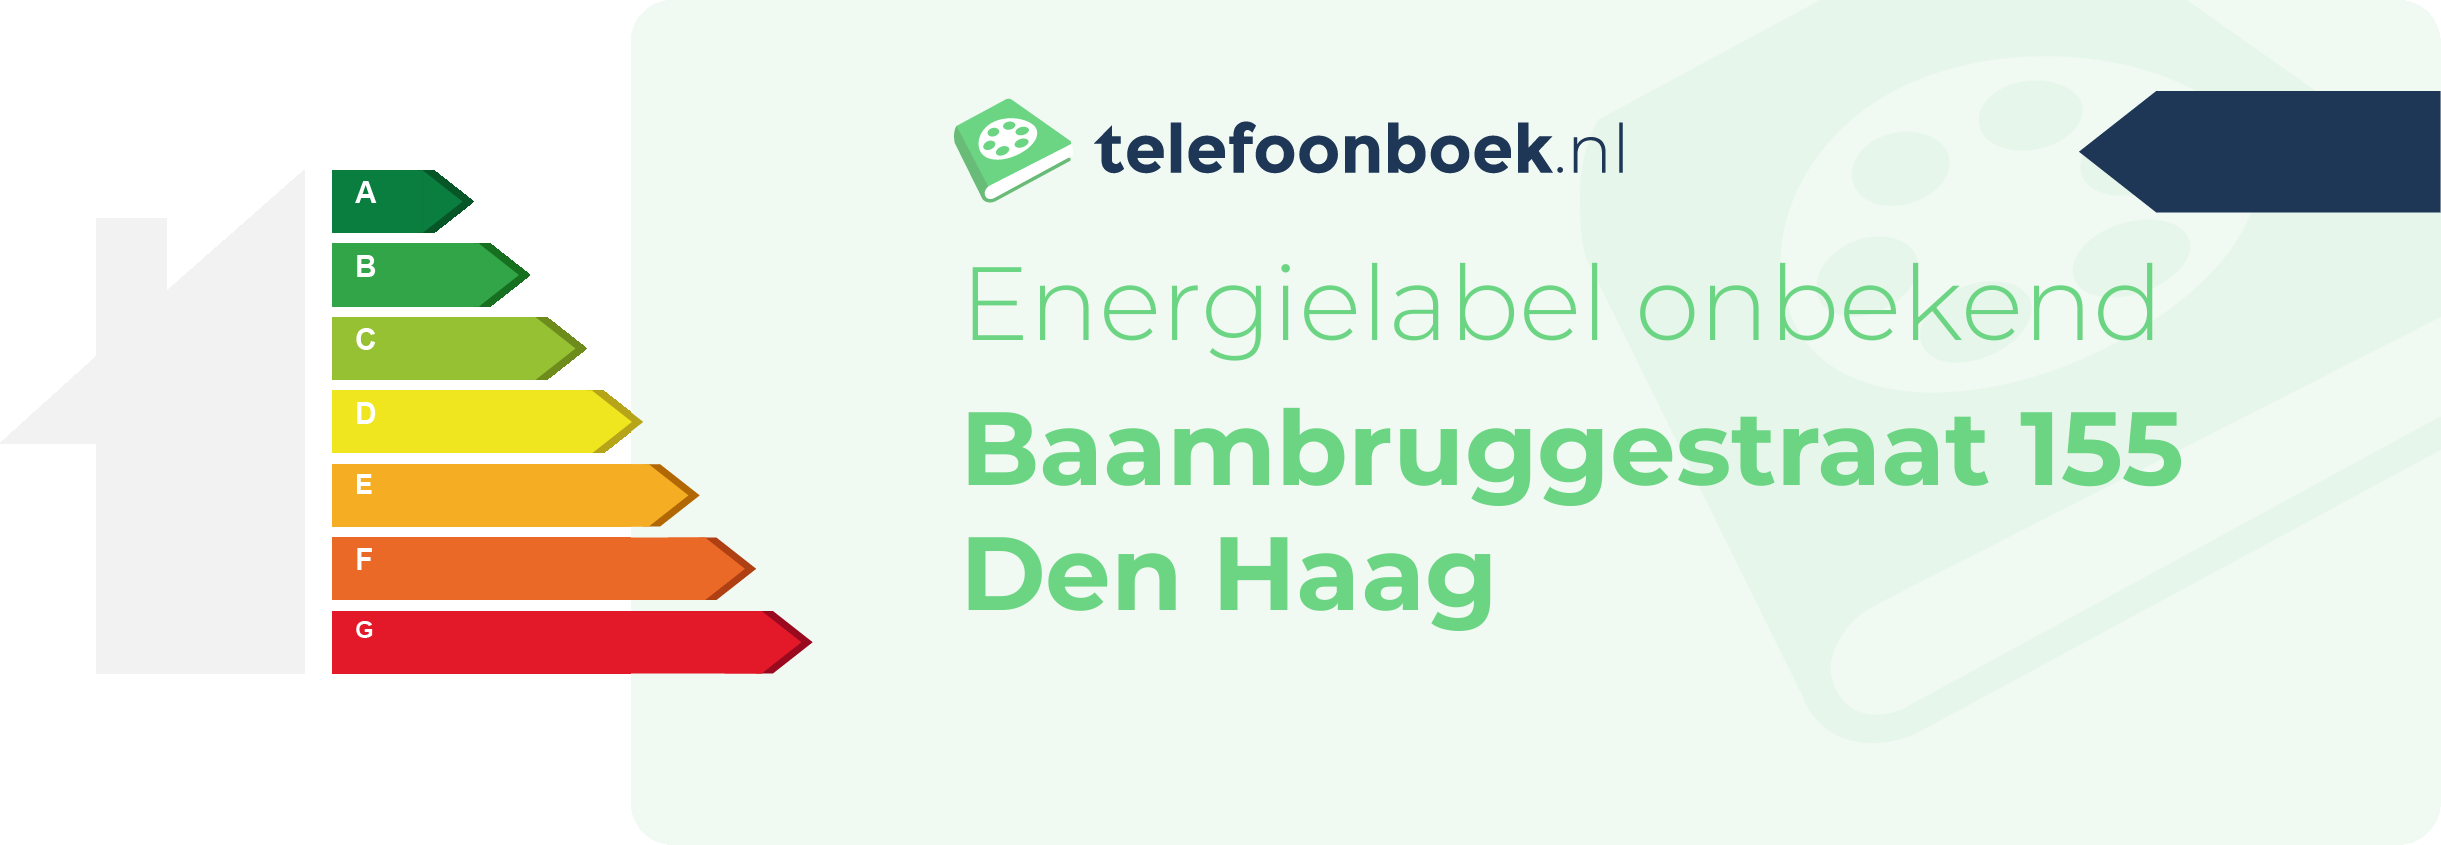 Energielabel Baambruggestraat 155 Den Haag